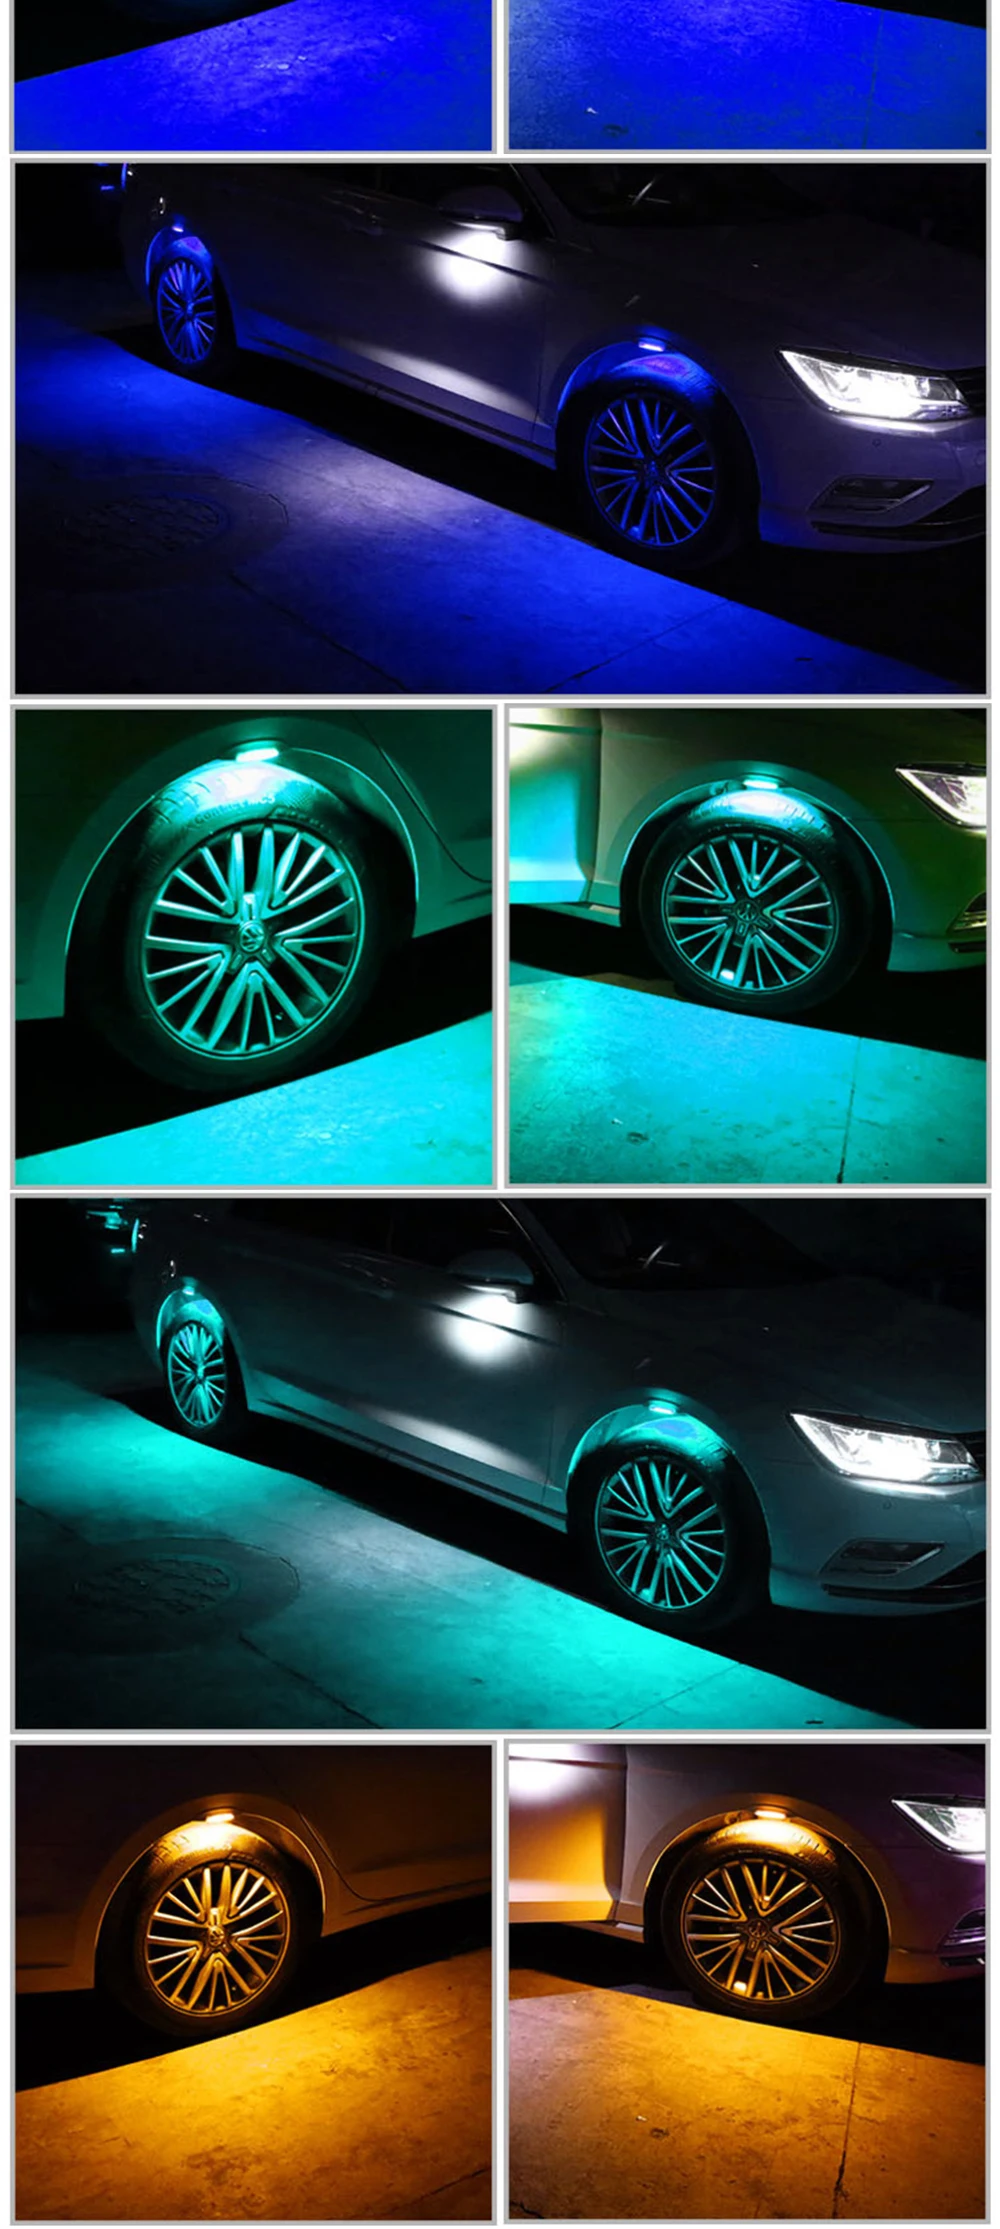 4 шт./лот, универсальный автомобильный светильник, автомобильная декоративная лампа, колесо для бровей, светильник s, атмосферный светильник, аксессуары для автомобиля